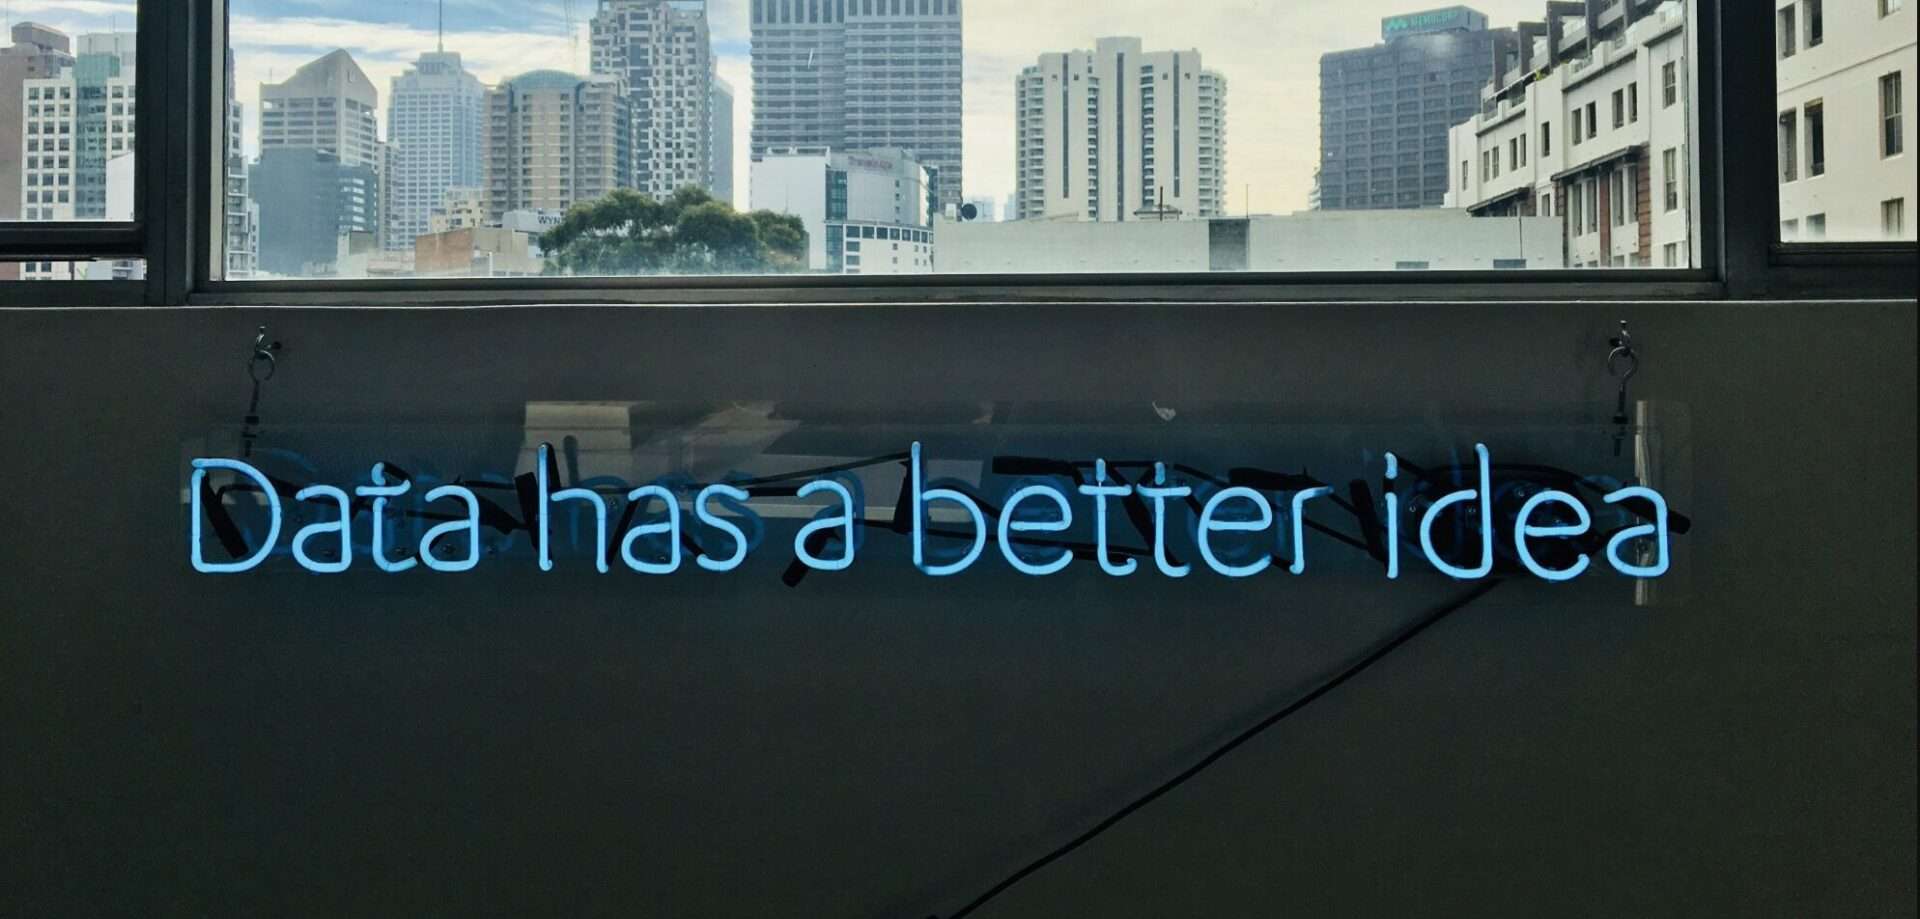 Una lámpara de neón en una pared que muestra la frase "data has a better idea"